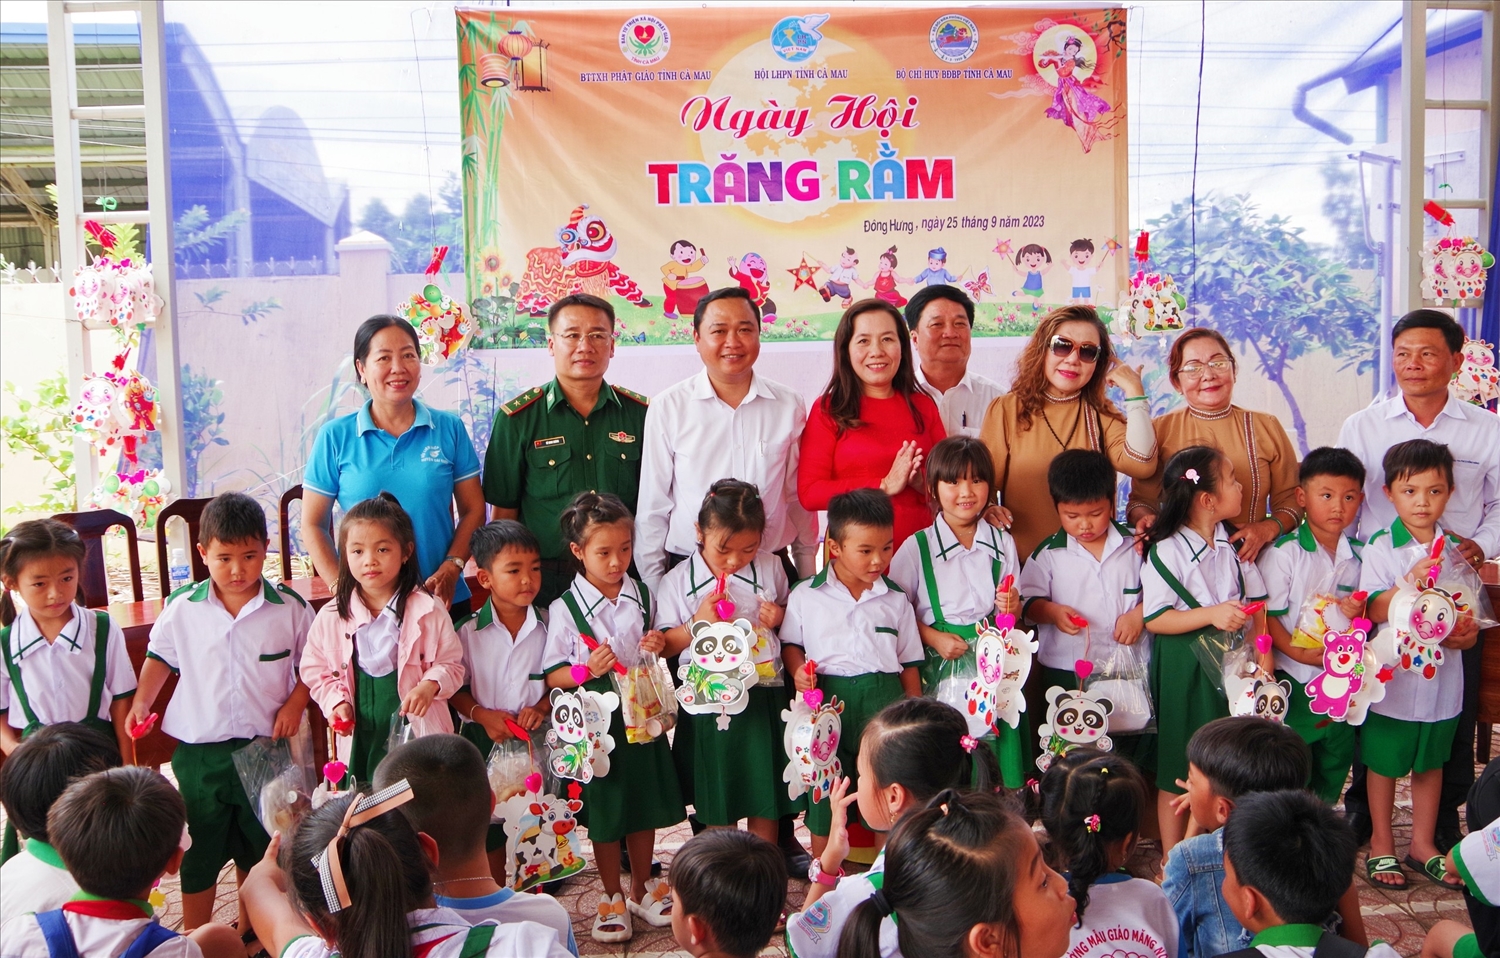 BĐBP tỉnh và Hội LHPN tỉnh Cà Mau tặng những phần quà Tết Trung thu cho các em học sinh trường Tiểu học 2 Đông Hưng